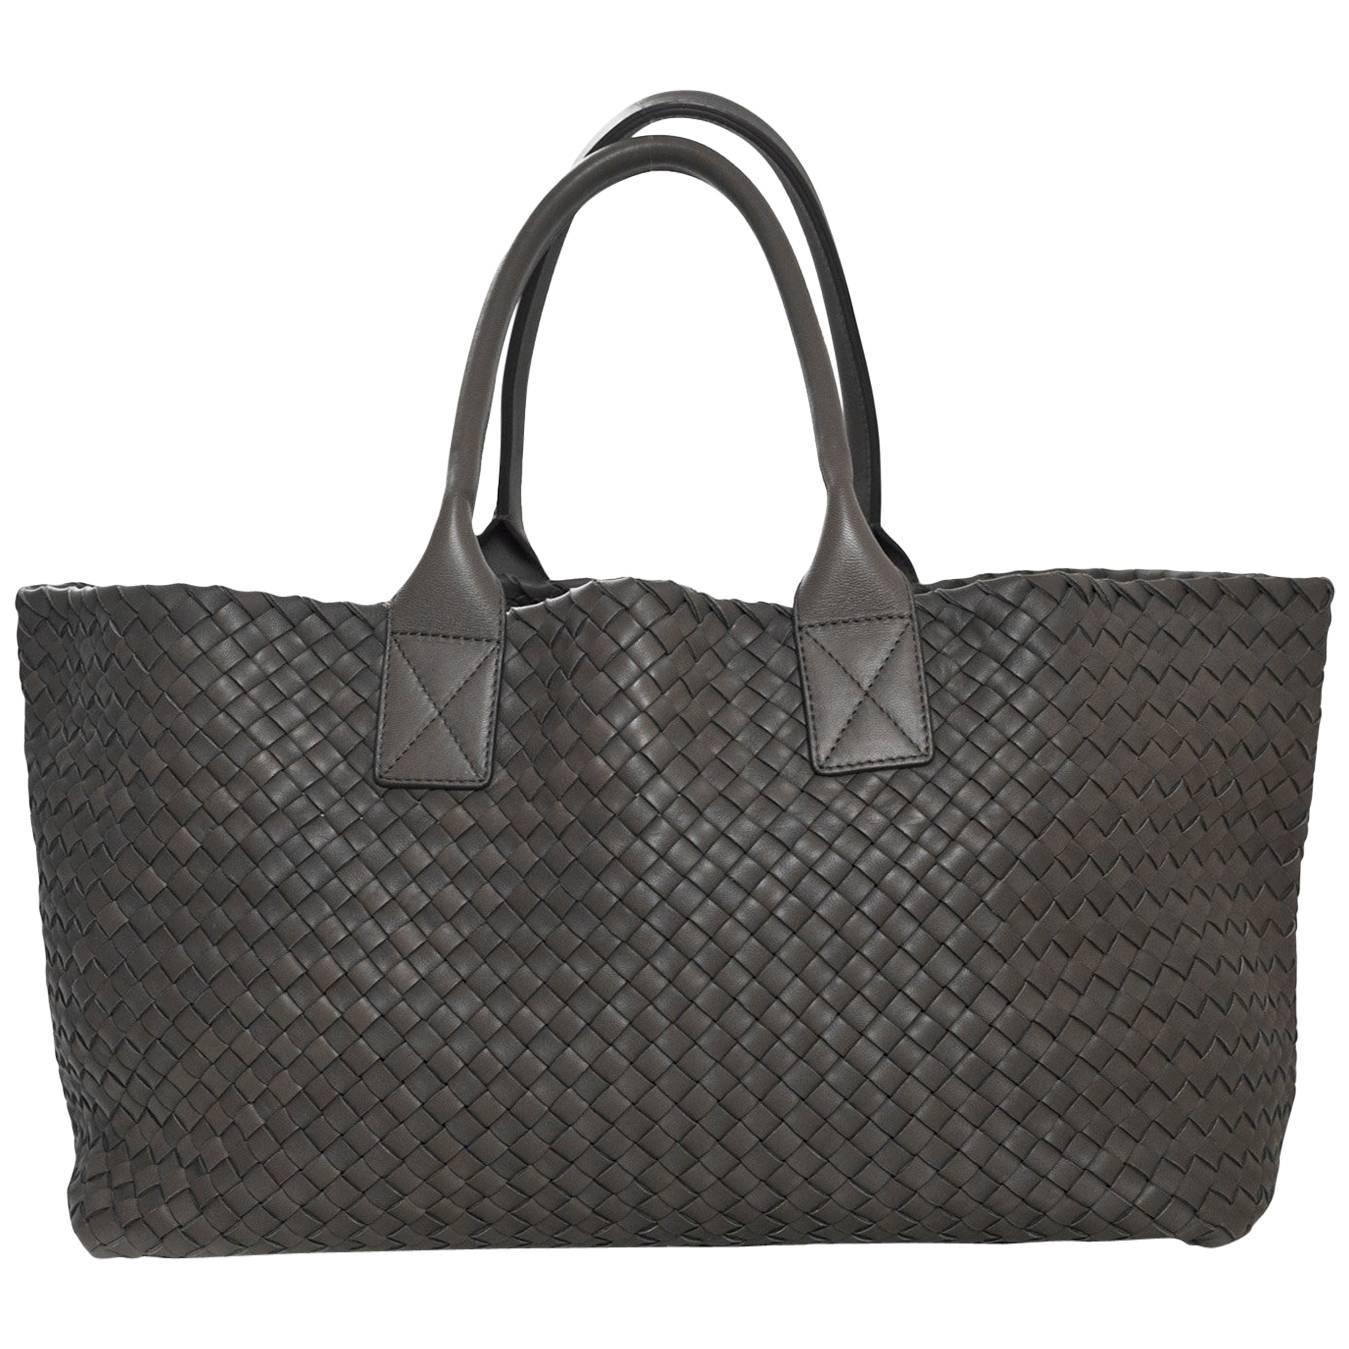 Bottega Veneta Taupe Intrecciato Leather Medium Cabat Tote Bag rt. $7, 000